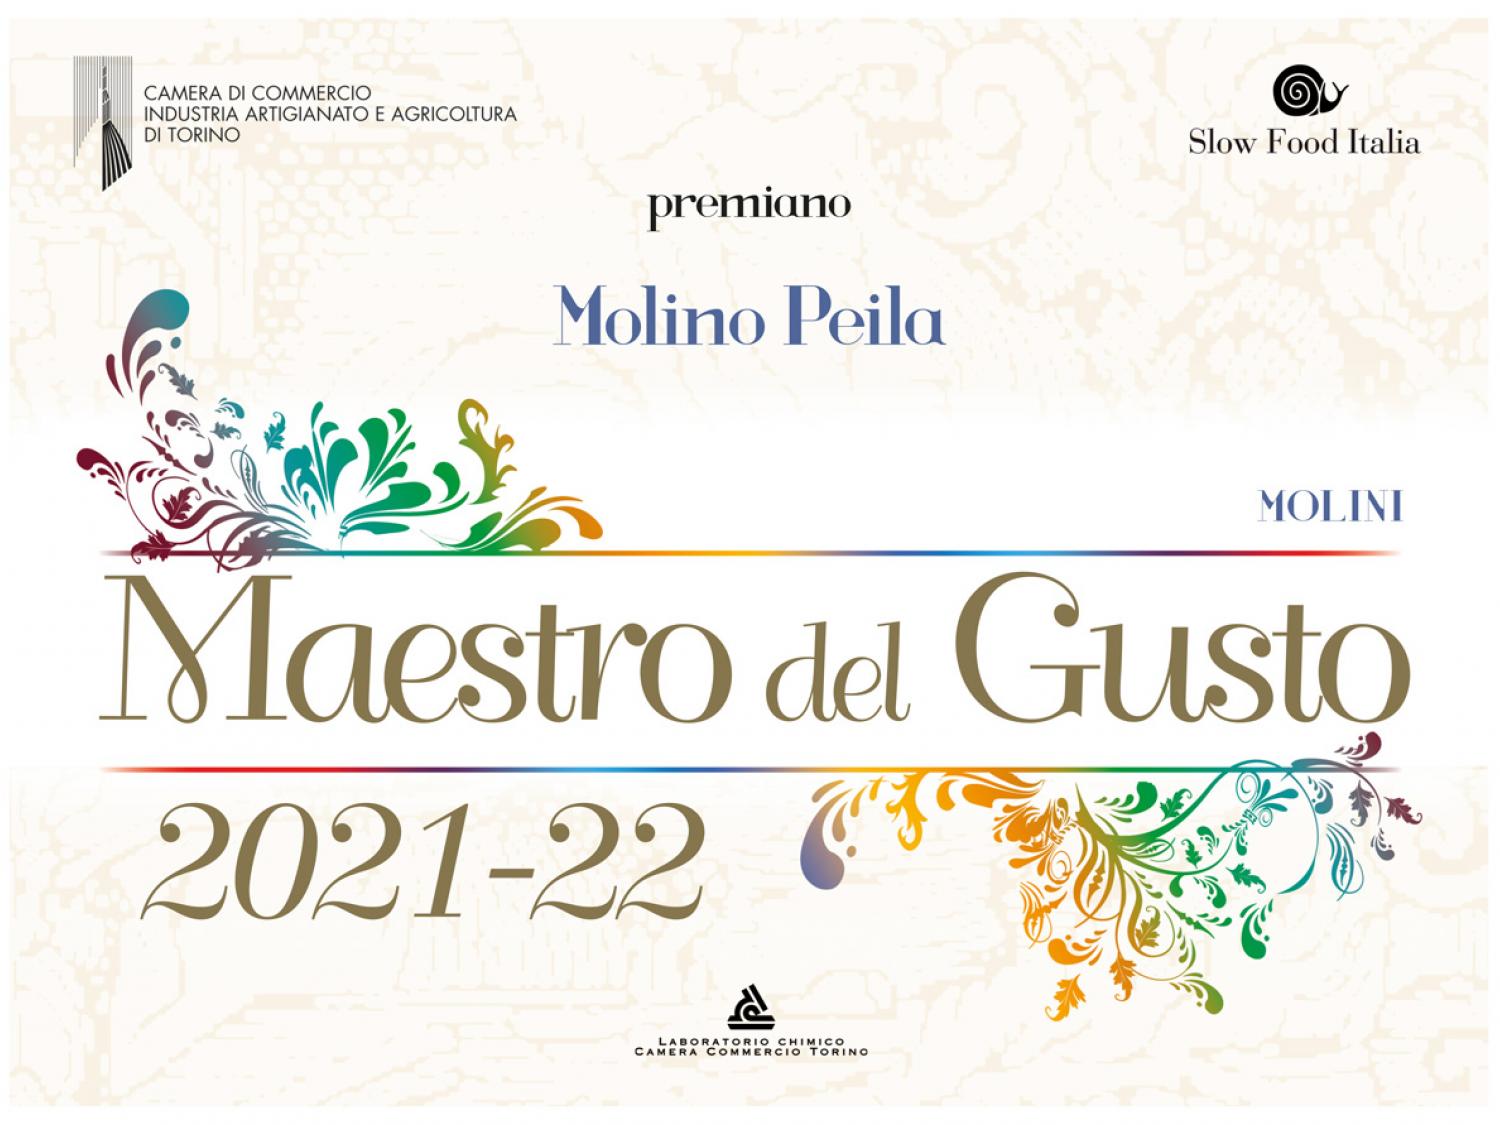 Molino Peila - Maestro del Gusto's certificate 2021/22